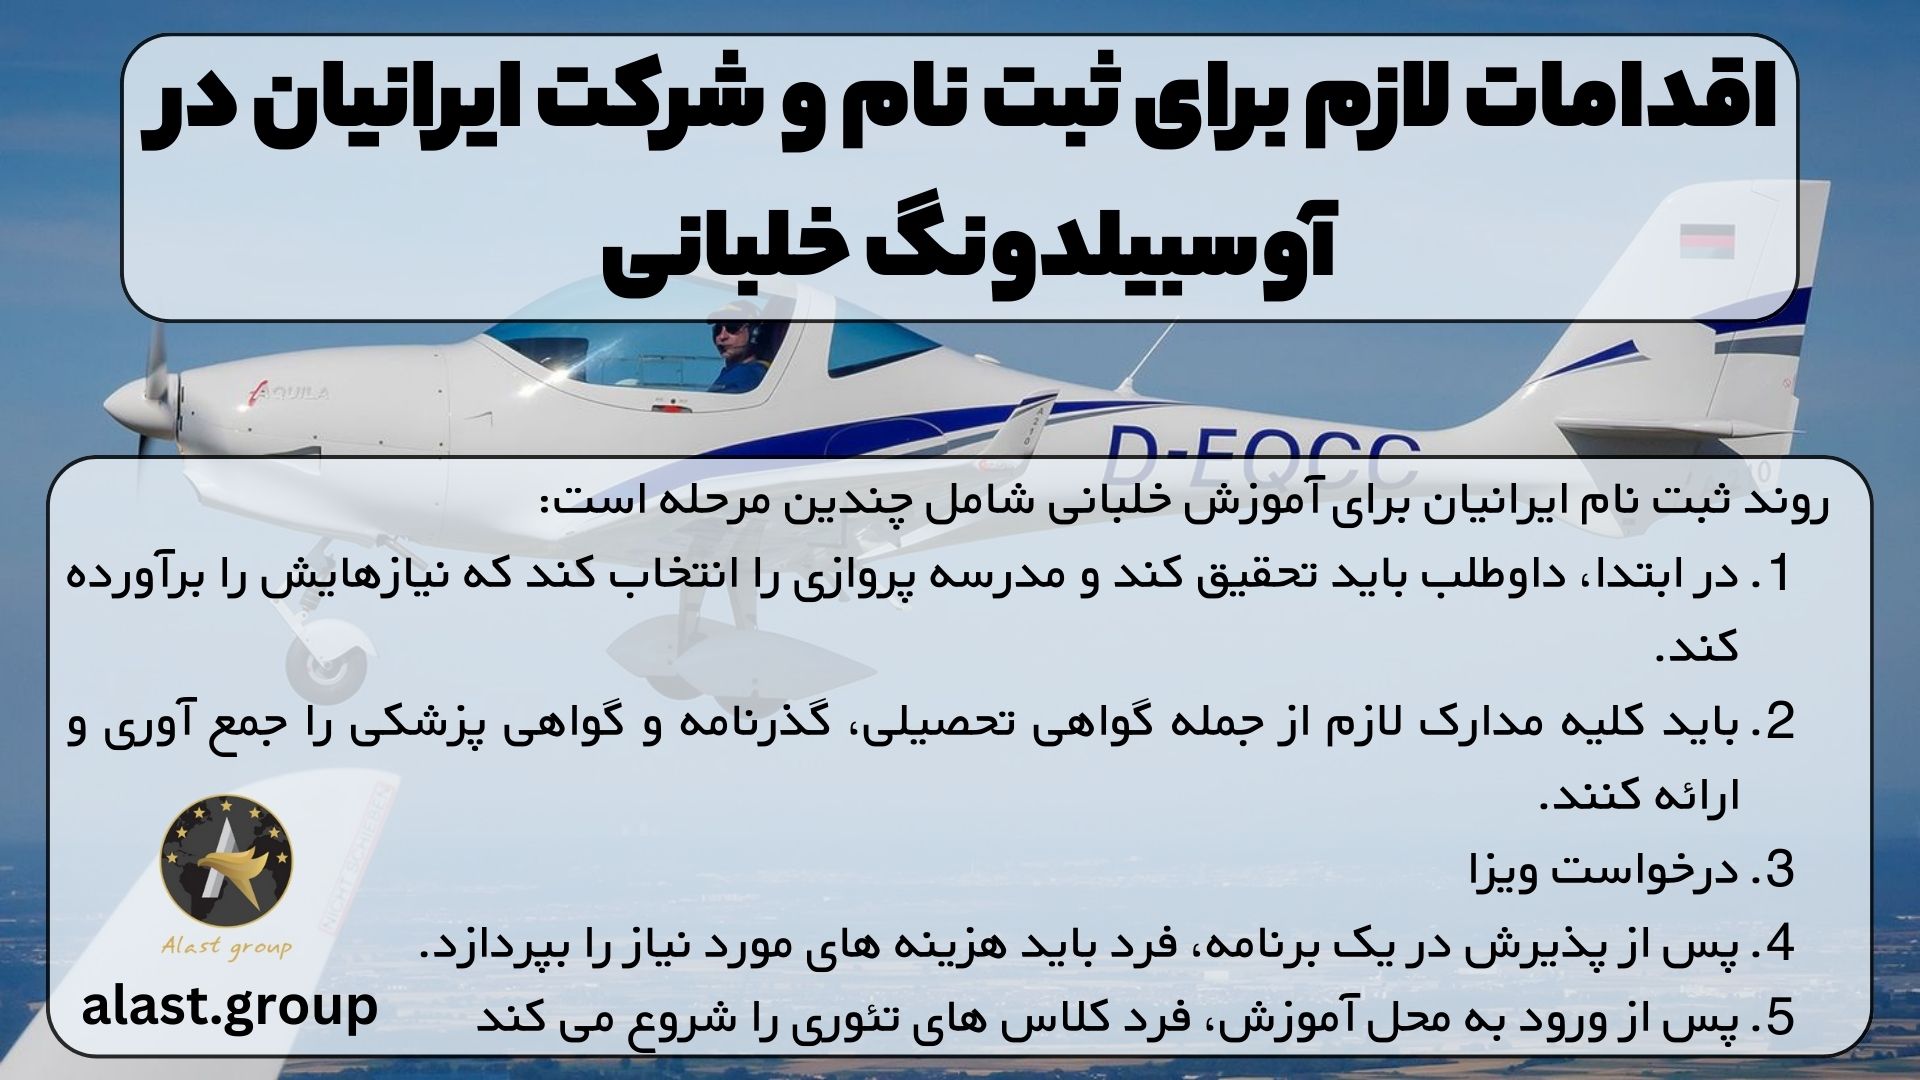 اقدامات لازم برای ثبت نام و شرکت ایرانیان در آوسبیلدونگ خلبانی